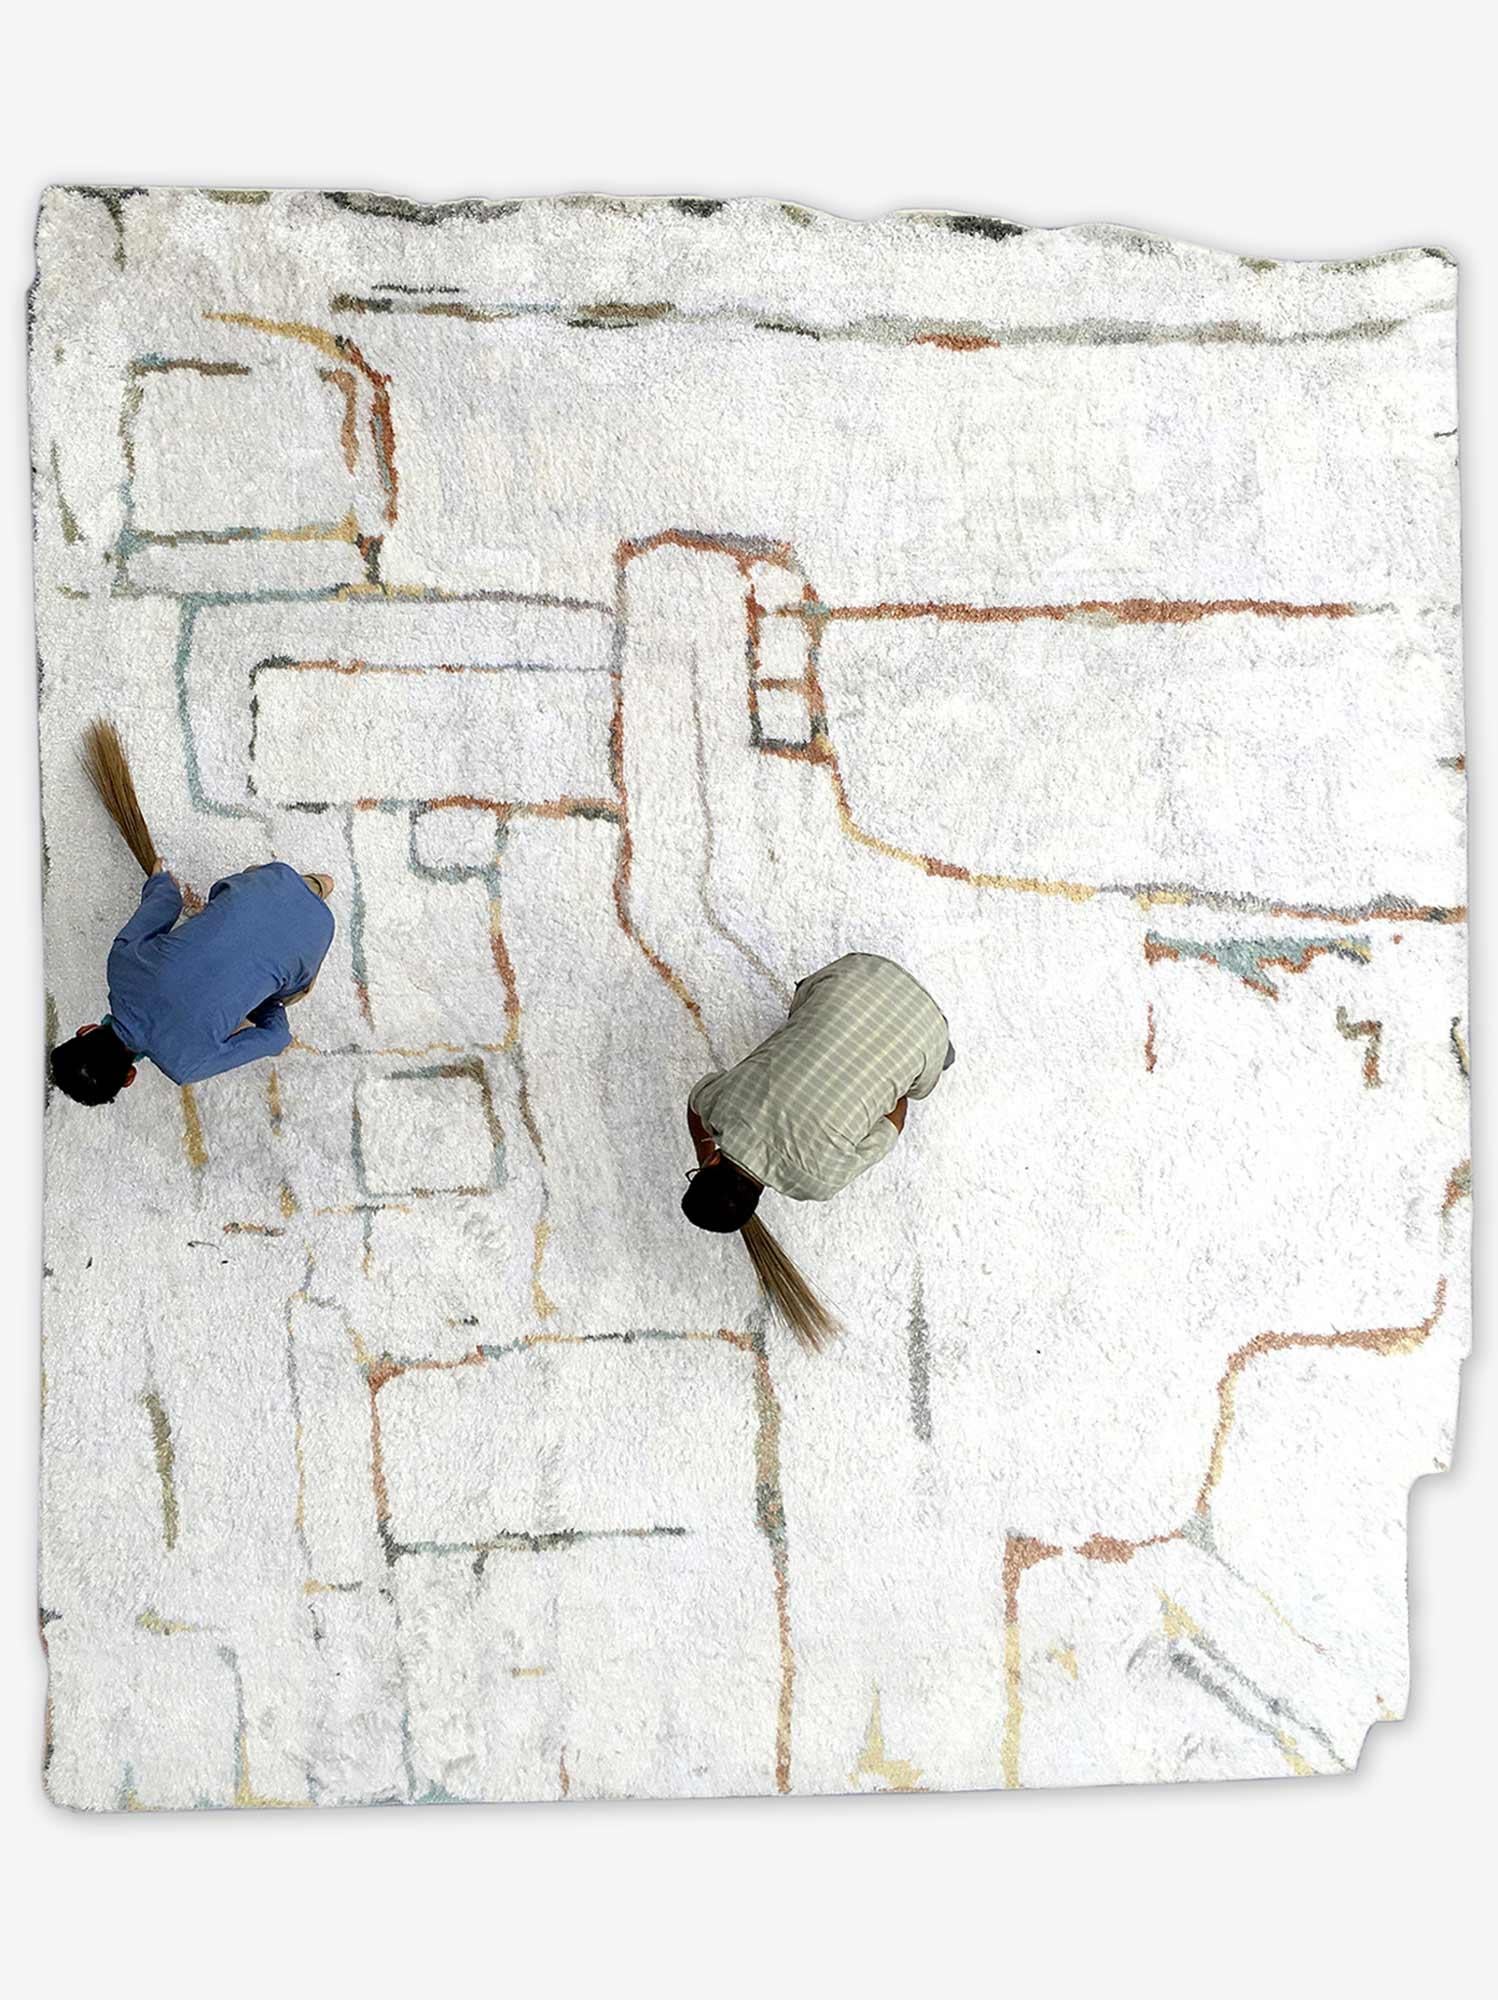 Muster des Teppichs: Portico - Sol
MATERIAL: Matkaseide/ Merinowolle.
Qualität: Marokkanische Webart.
Größe: 14'-0